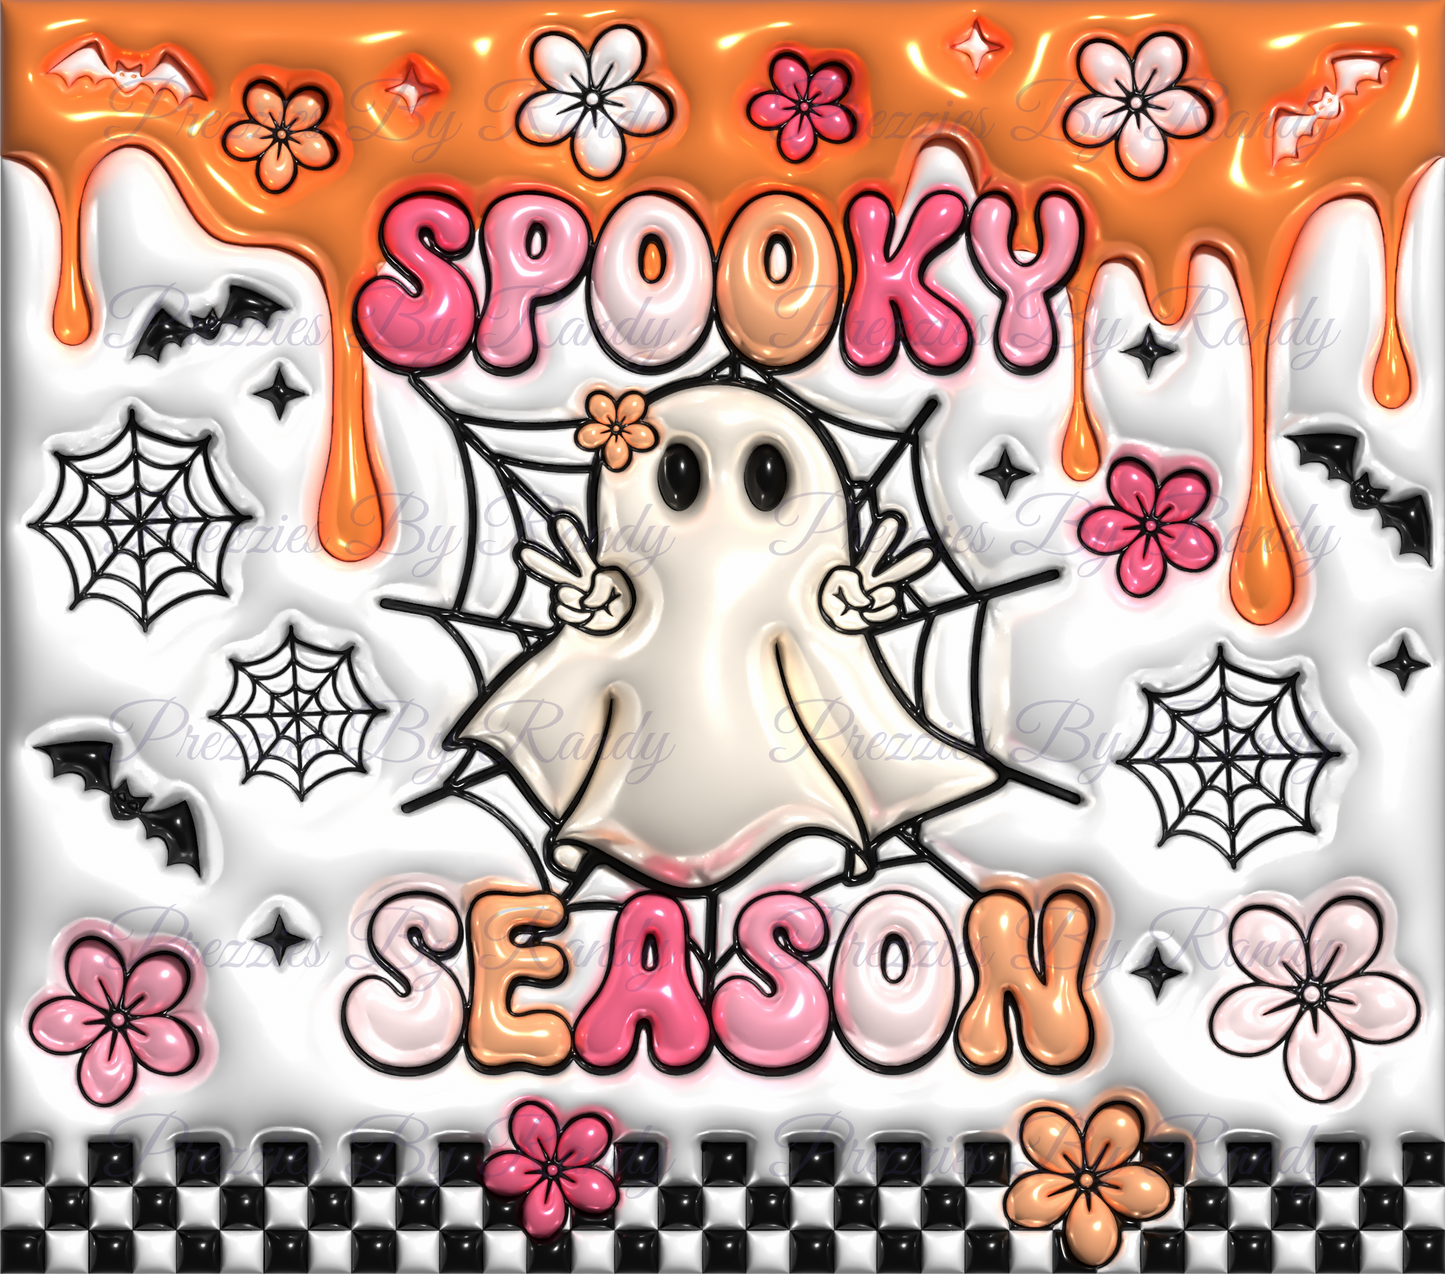 Puff Retro Spooky Season